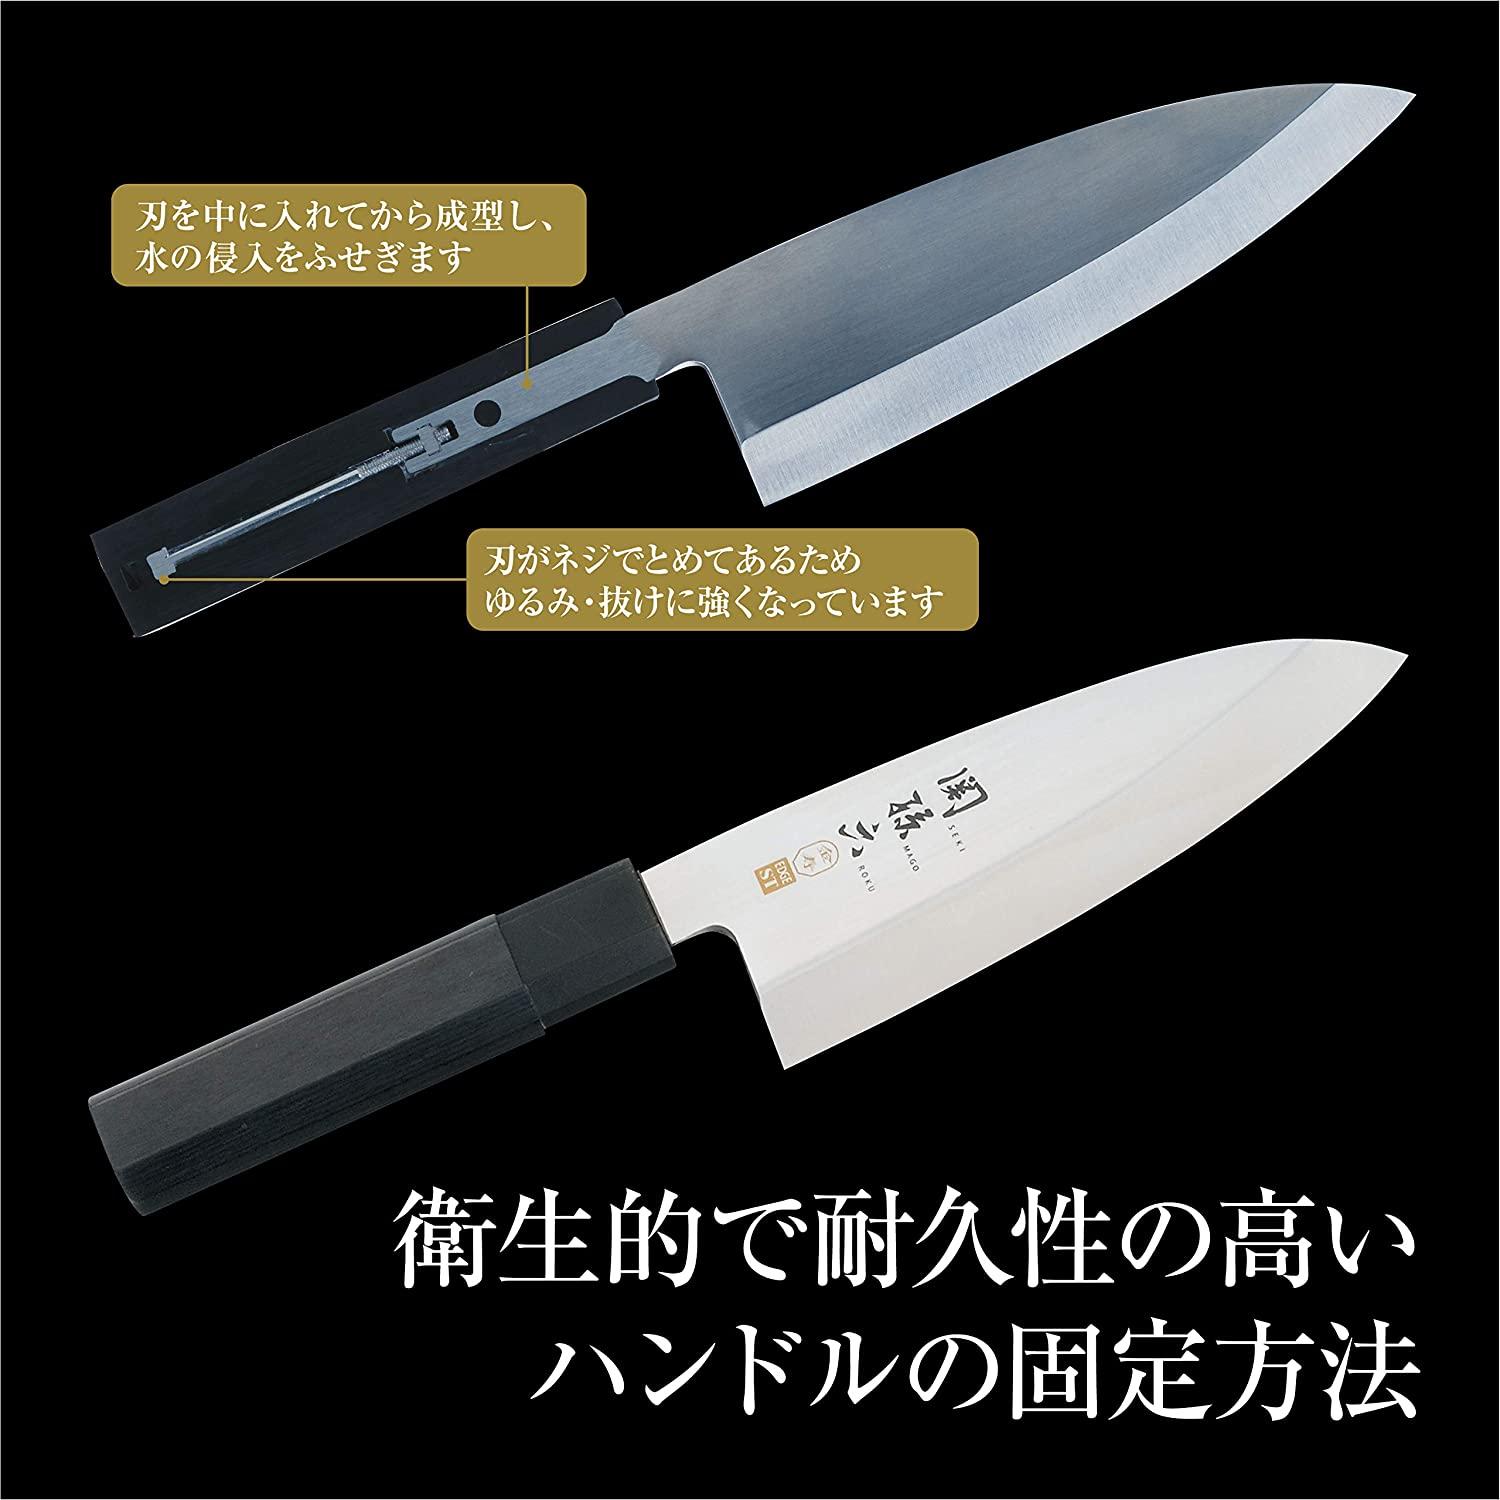 Kai Brand Sashimi Knife